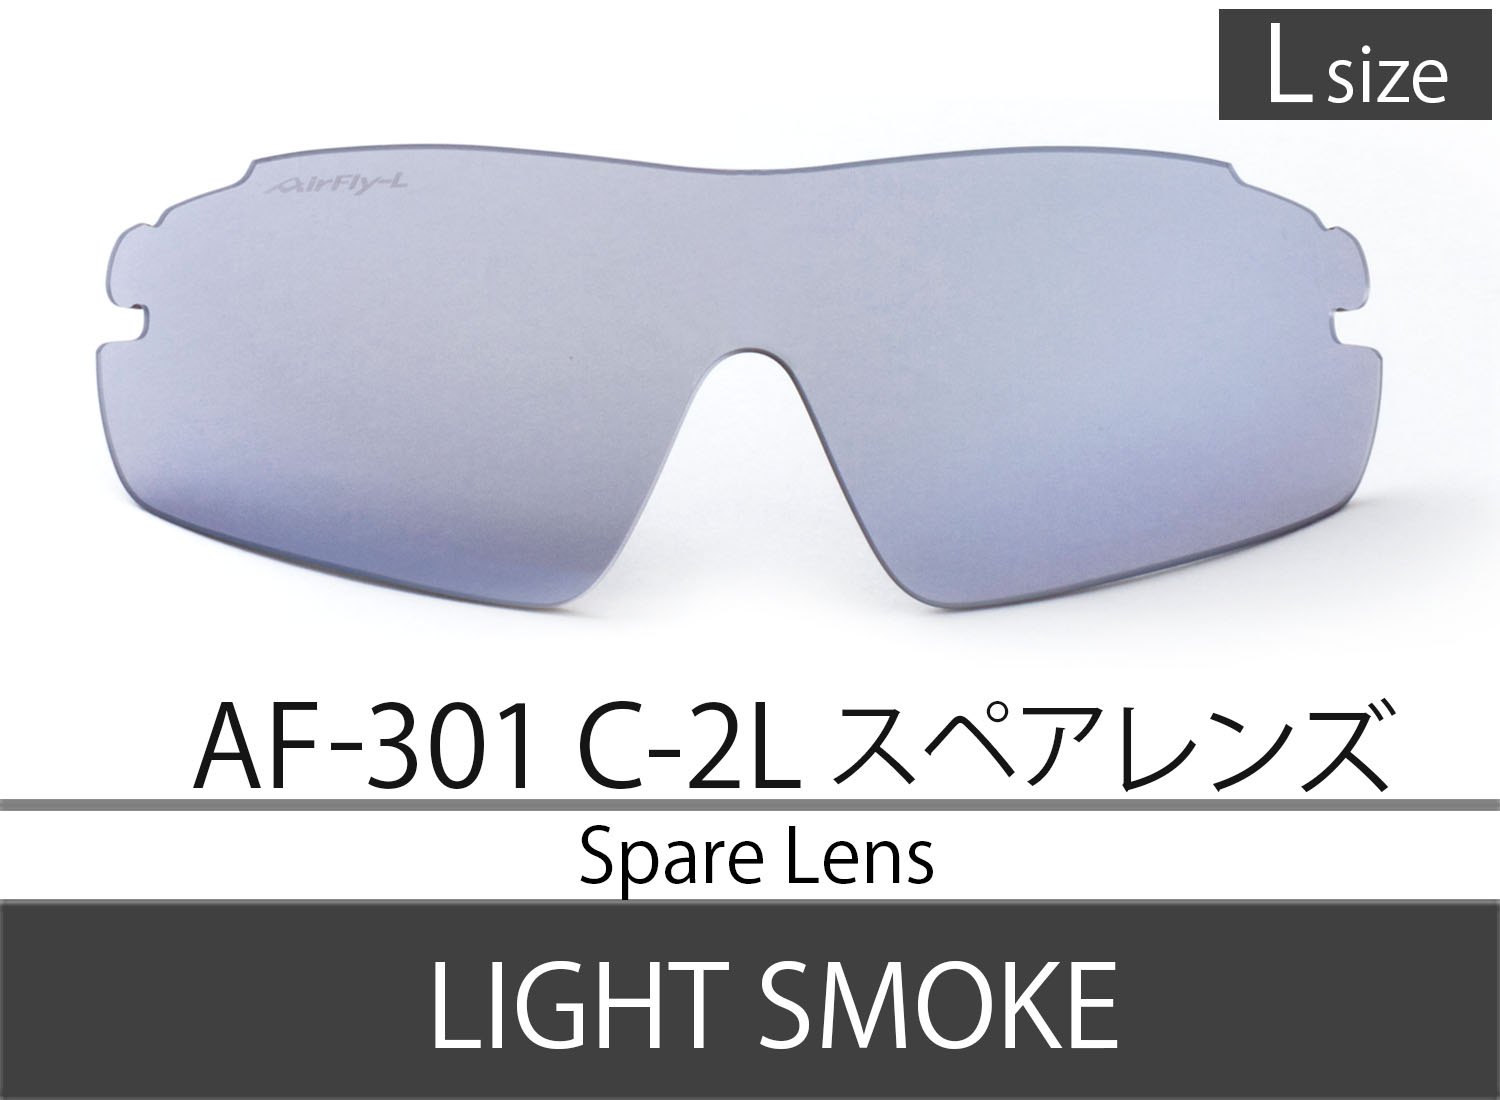 Spare Lens【AF-301 C-2 Light Smoke Lsize】